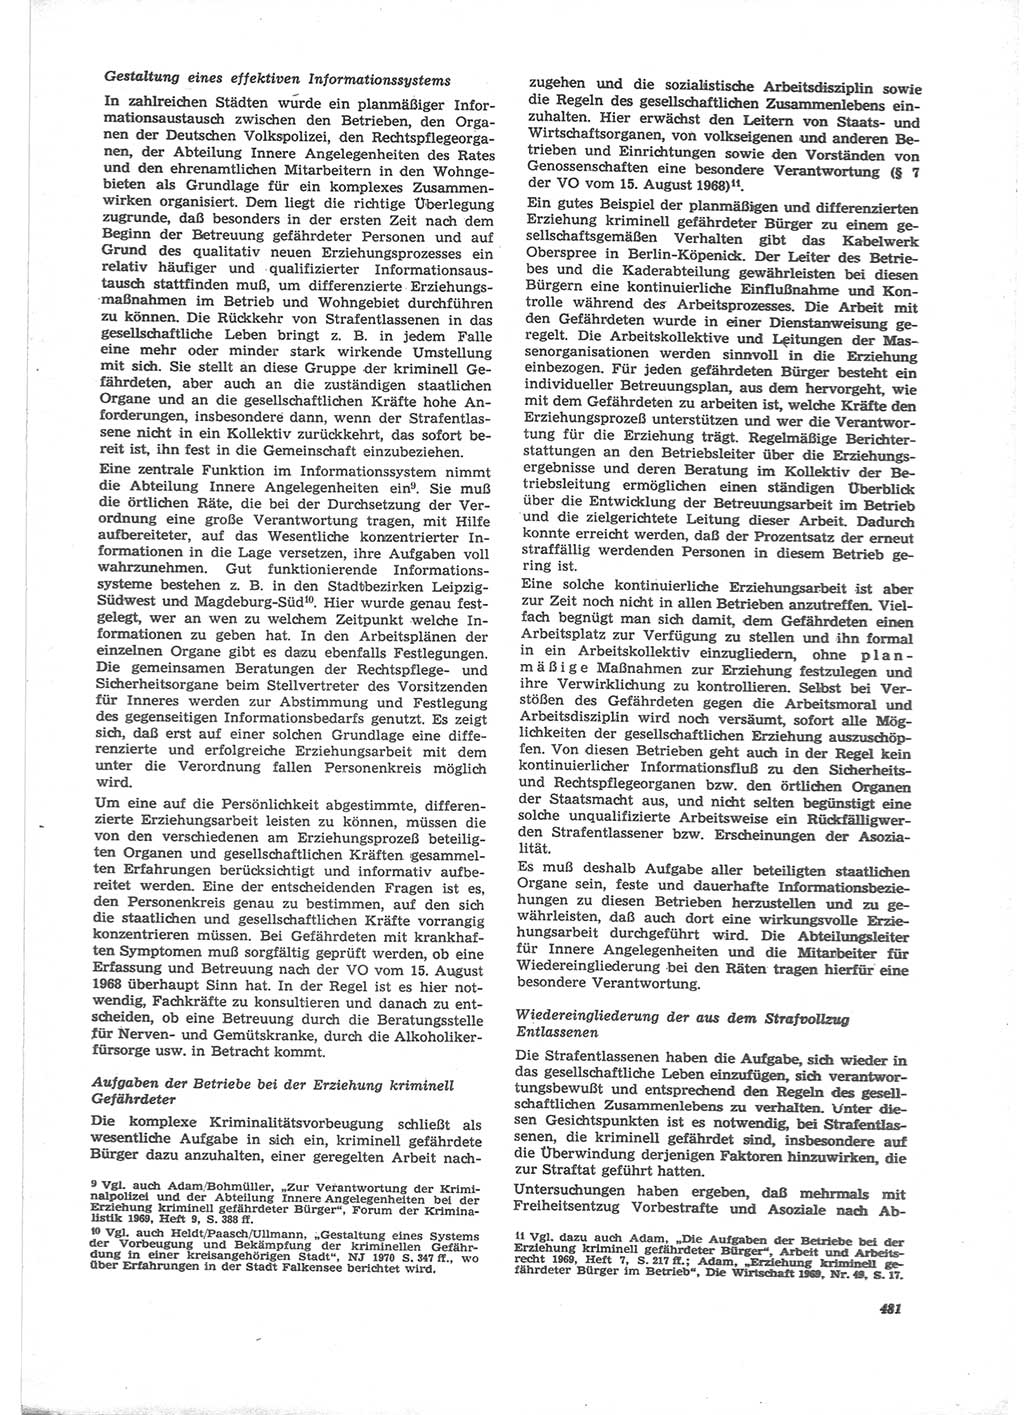 Neue Justiz (NJ), Zeitschrift für Recht und Rechtswissenschaft [Deutsche Demokratische Republik (DDR)], 24. Jahrgang 1970, Seite 481 (NJ DDR 1970, S. 481)